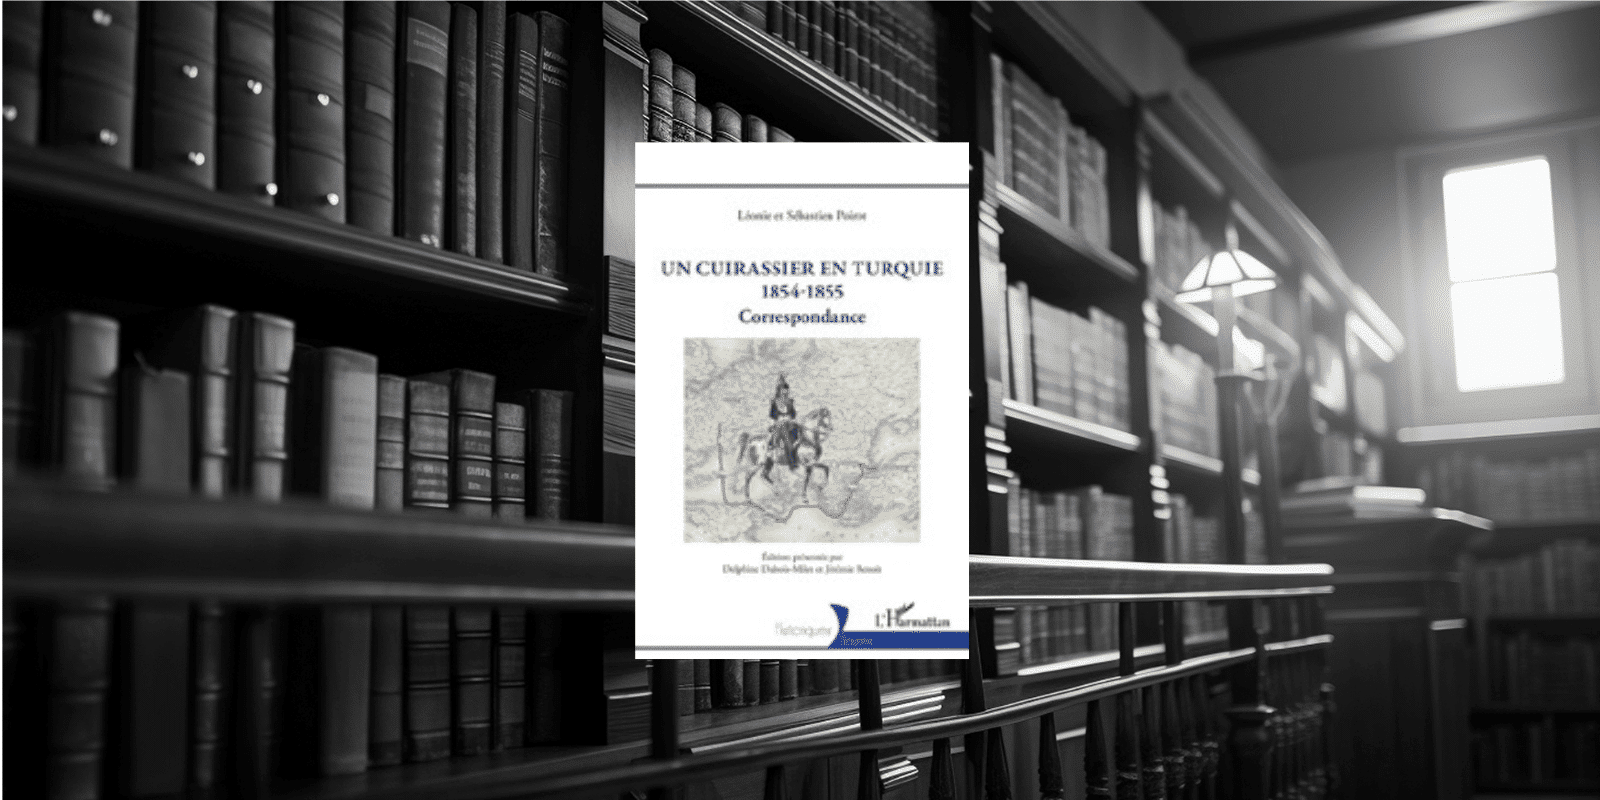 Livre : UN CUIRASSIER EN TURQUIE (1854-1855) Correspondance